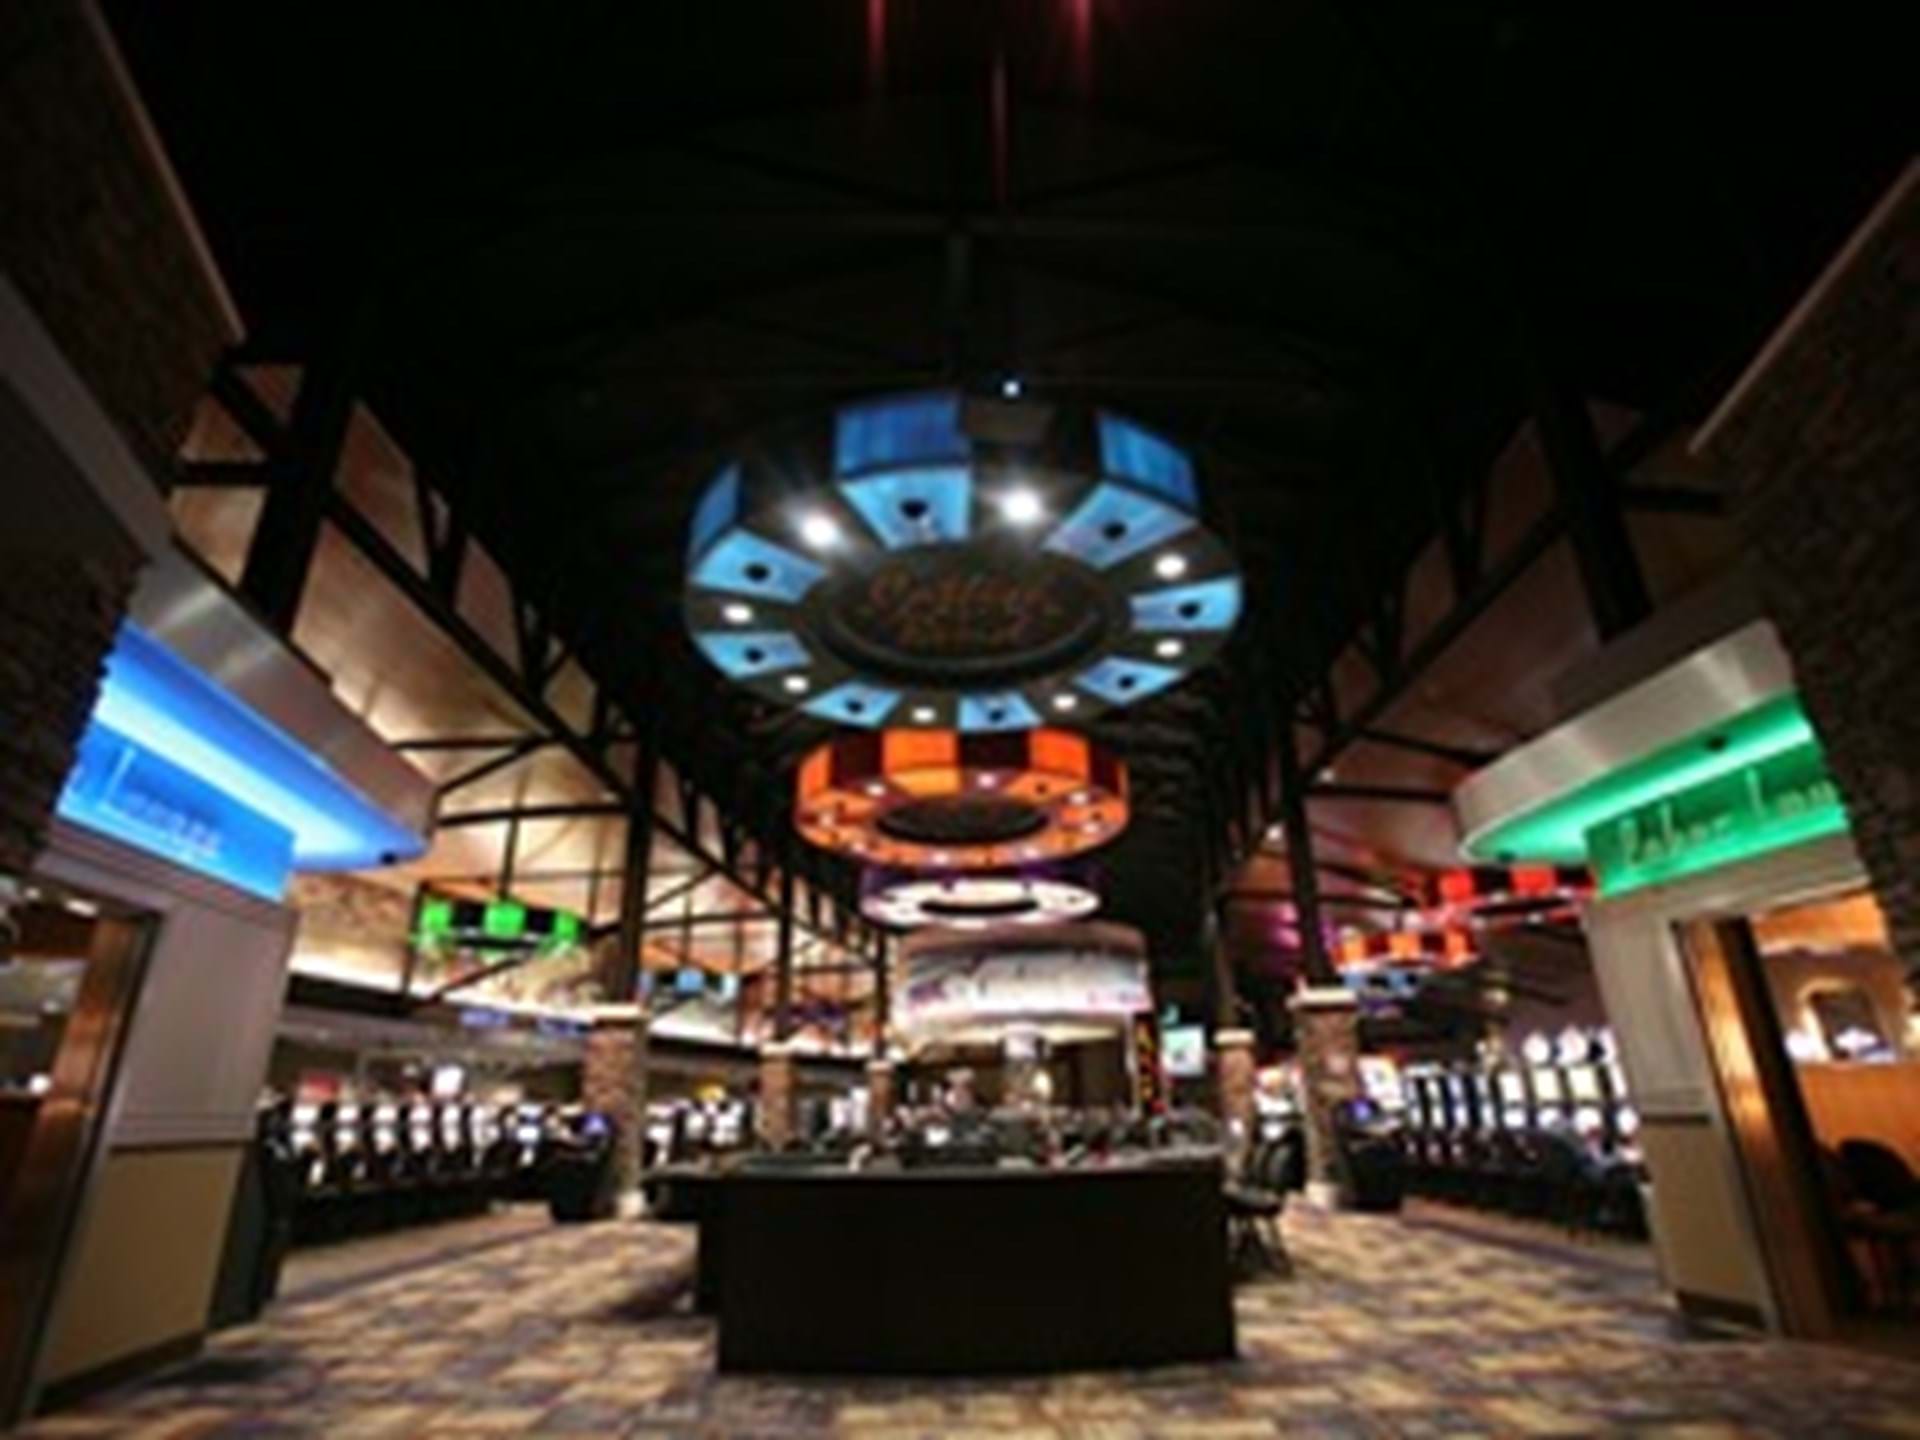 Catfish Bend Casino